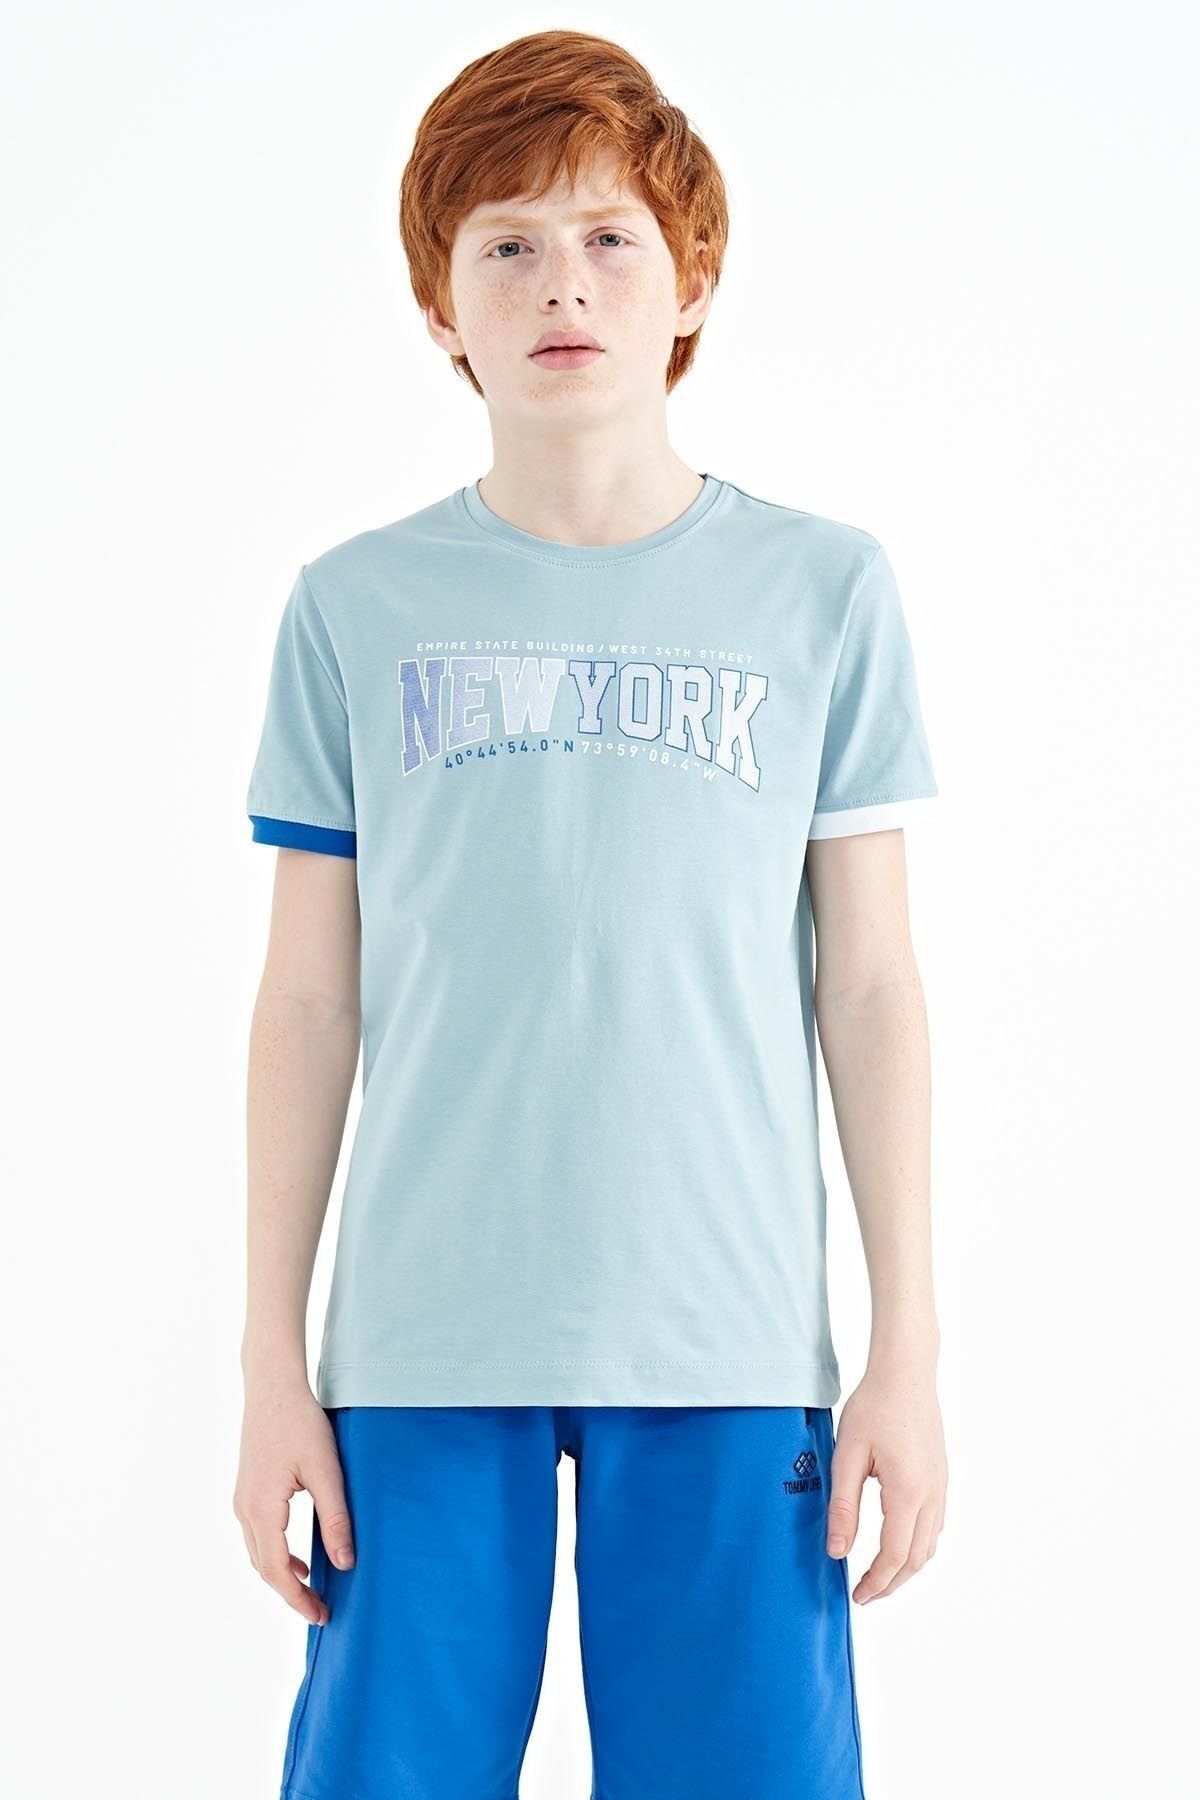 TOMMY LIFE Açık Mavi Yazı Baskılı Standart Kalıp O Yaka Erkek Çocuk T-shirt - 11105